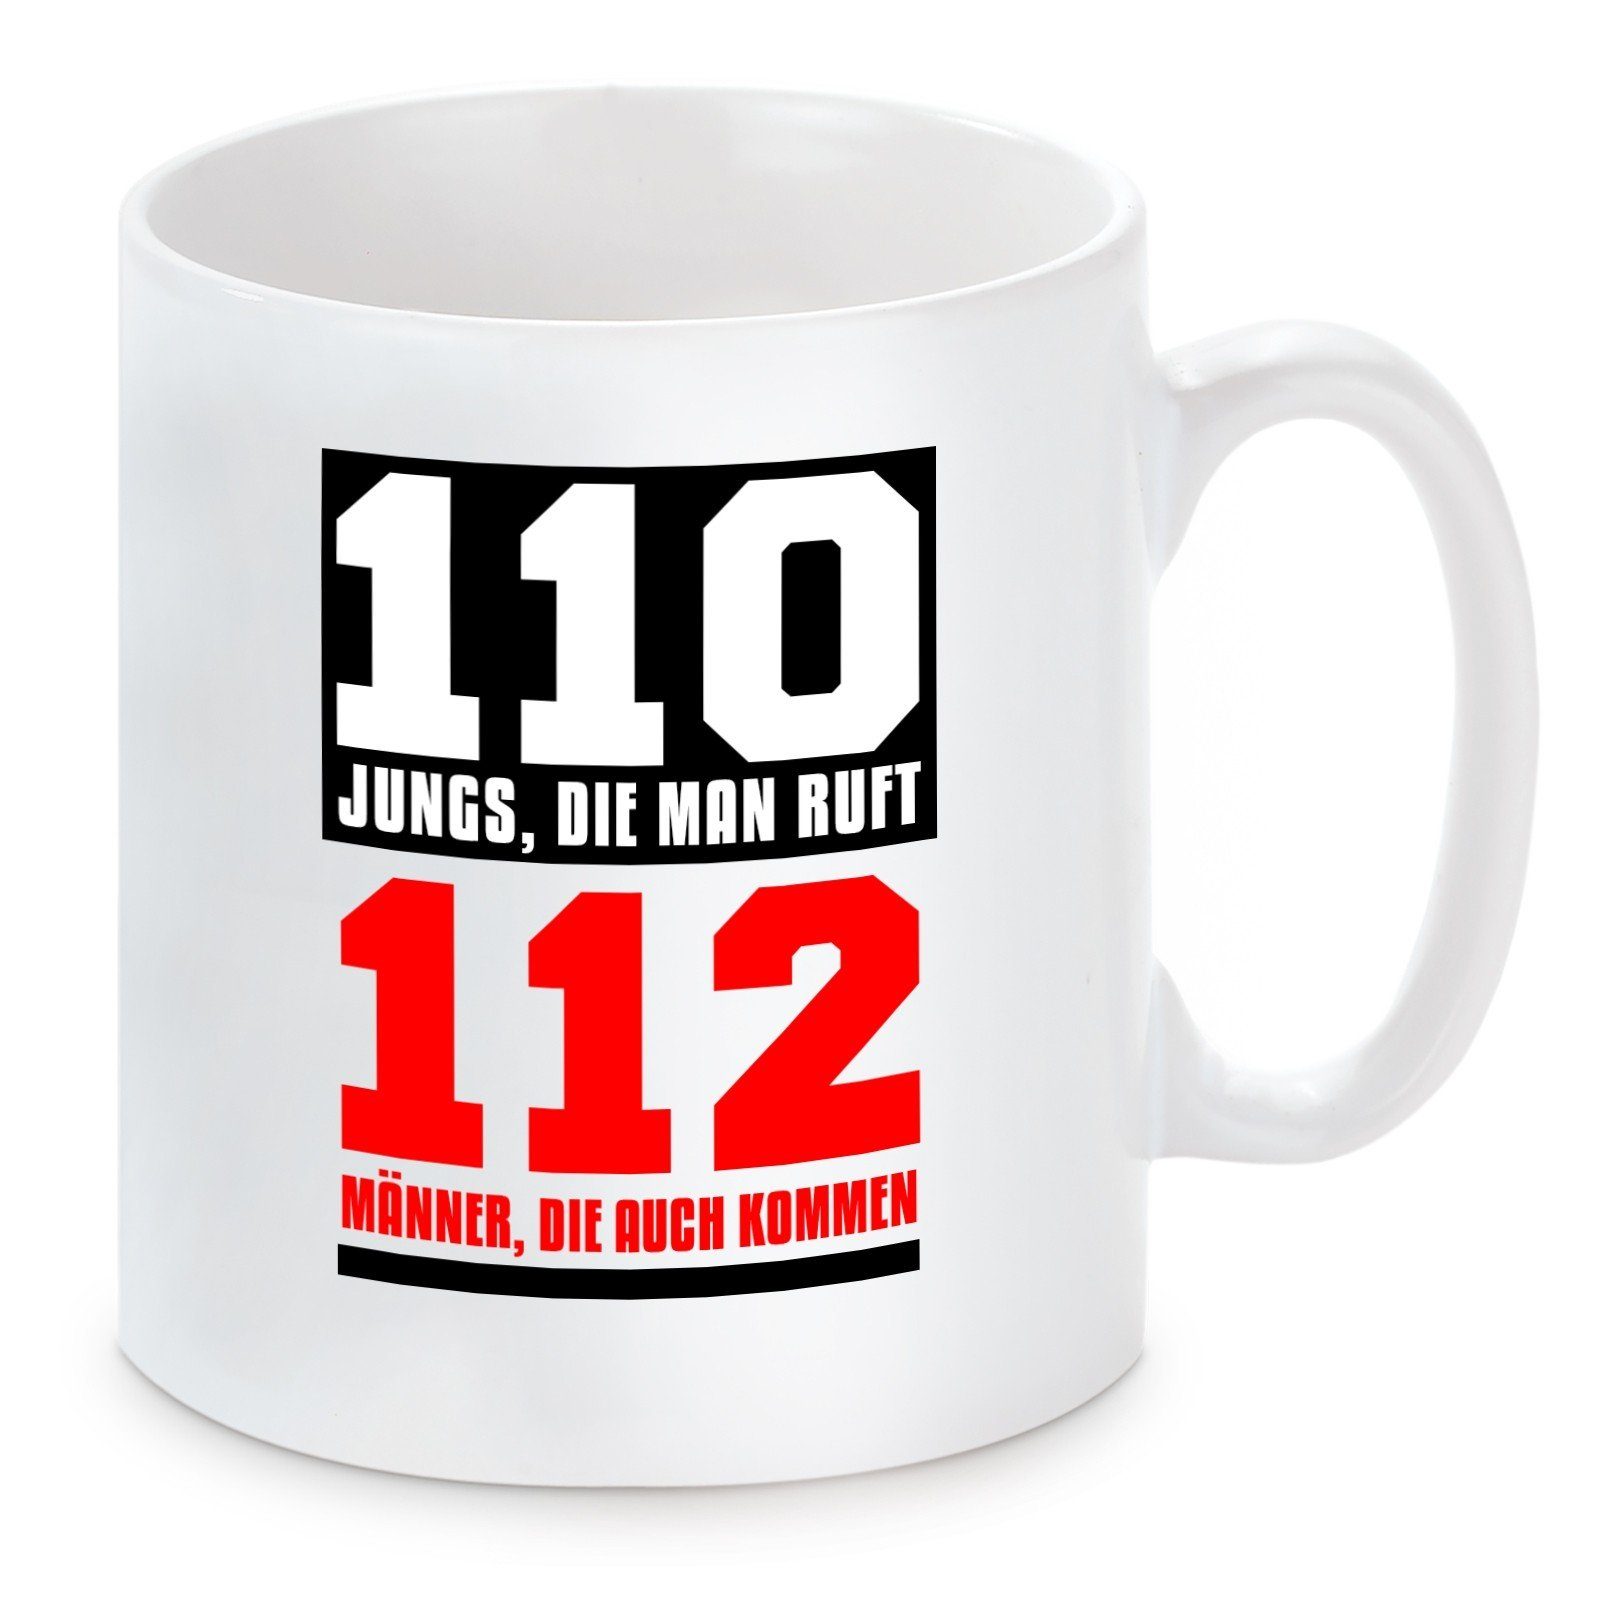 Herzbotschaft Tasse Kaffeebecher mit Motiv 110 Jungs, die man ruft - 112 Männer, die auch, Keramik, Kaffeetasse spülmaschinenfest und mikrowellengeeignet